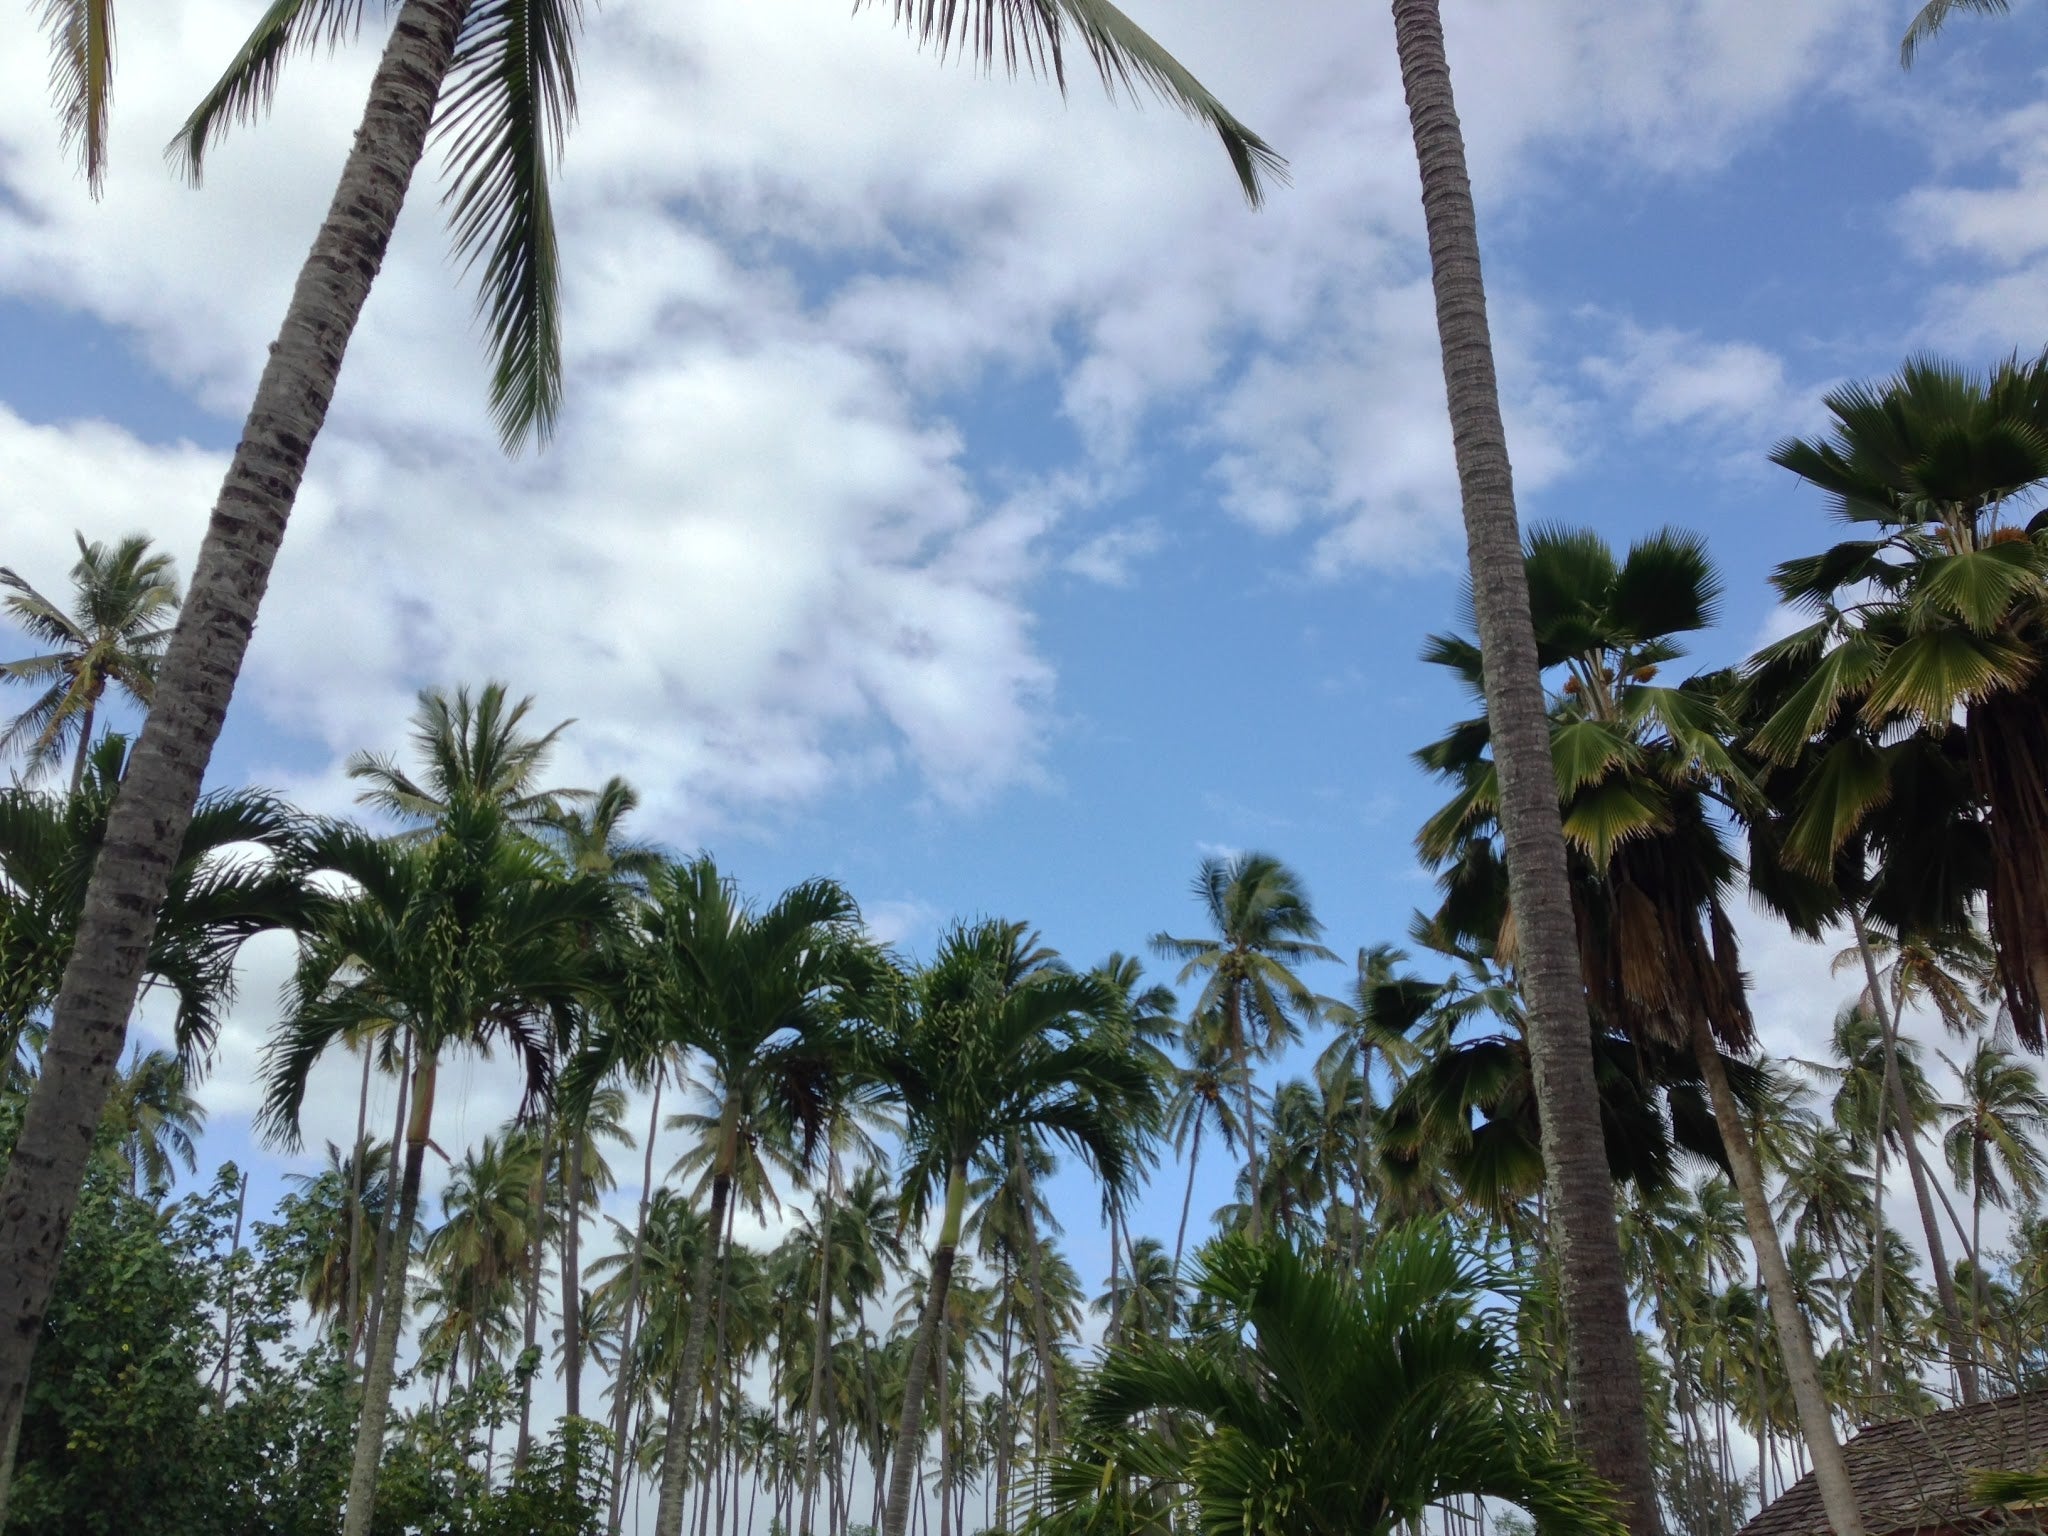 Palm trees across blue skies in Lihue, Hawaii